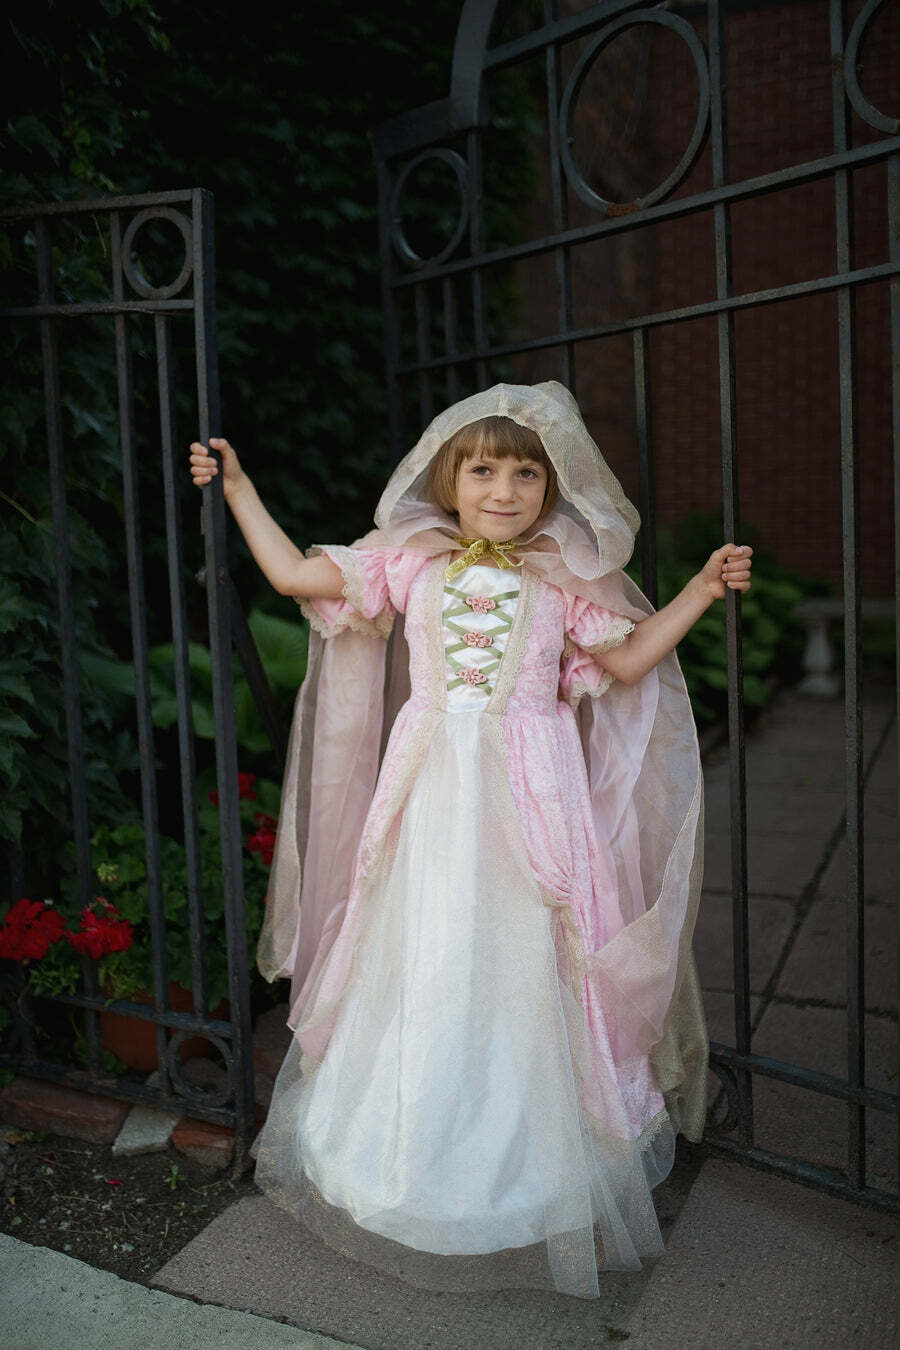 Royal Princess Dress (Size 5-6)